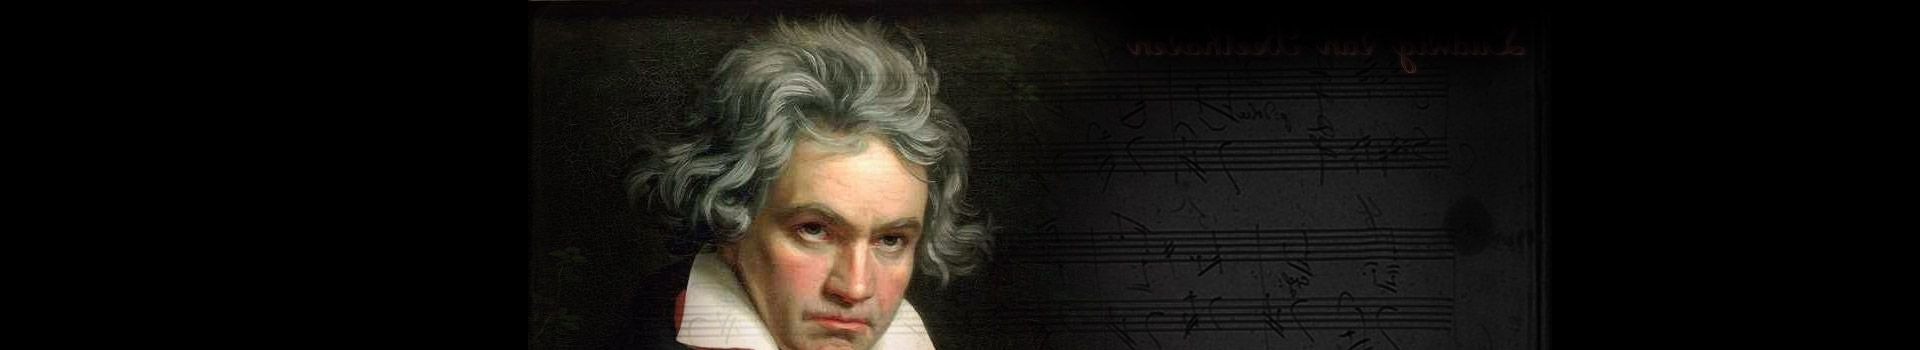 Beethoven's Ninth tickets at the Royal Albert Hall